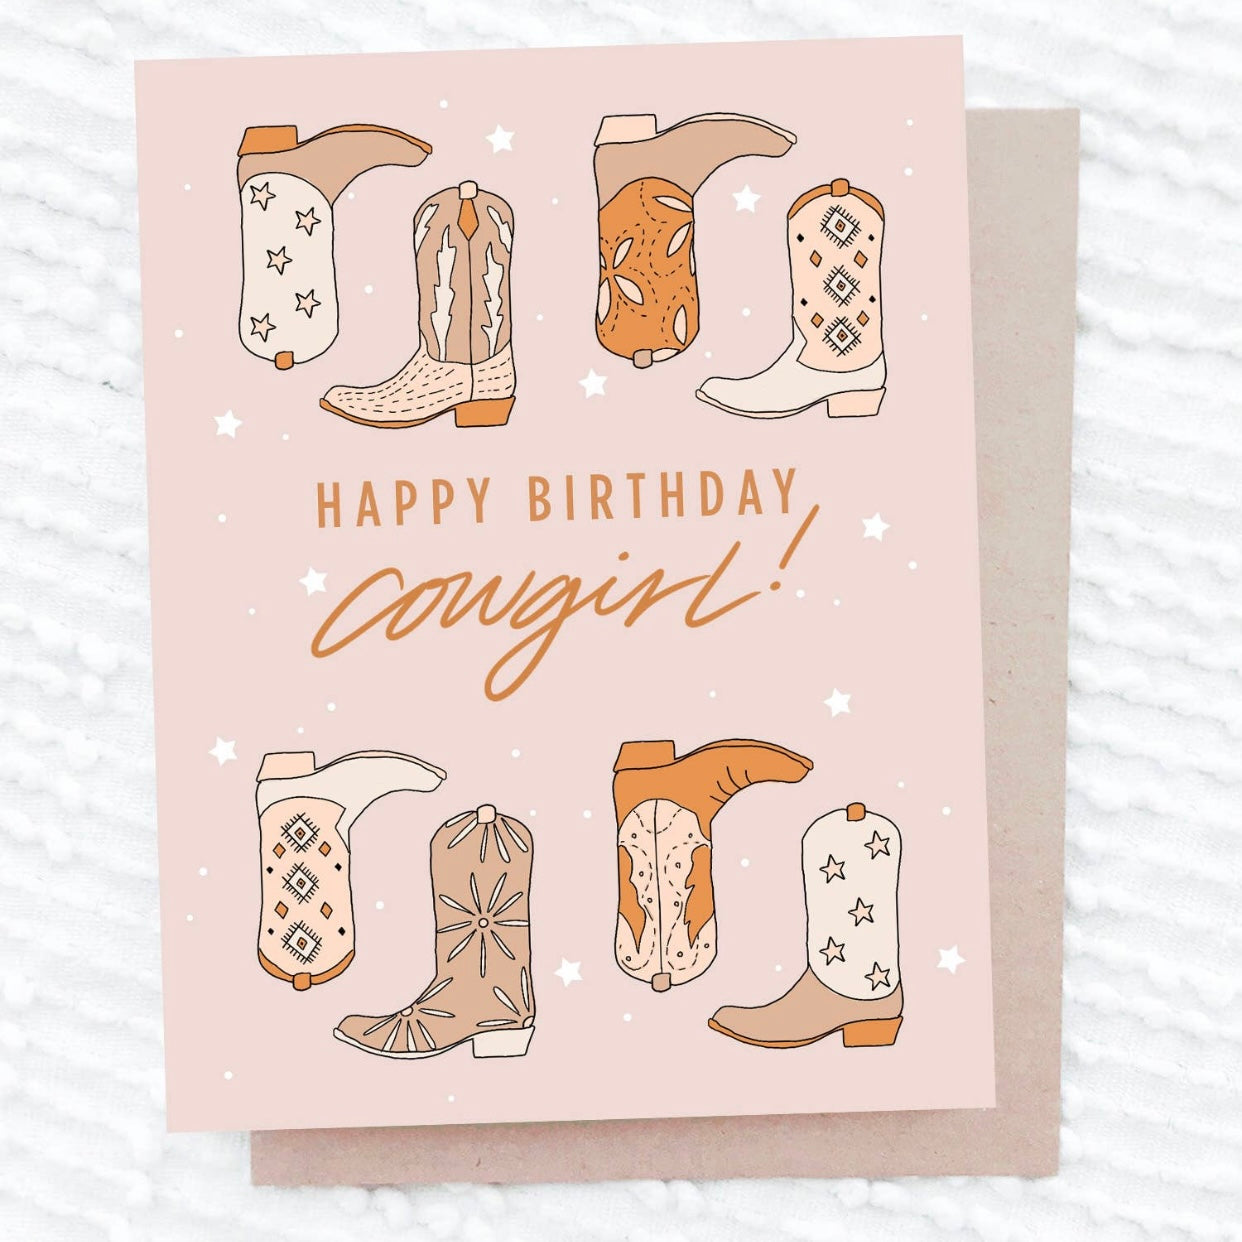 Happy Birthday Cowgirl! | Greeting Card